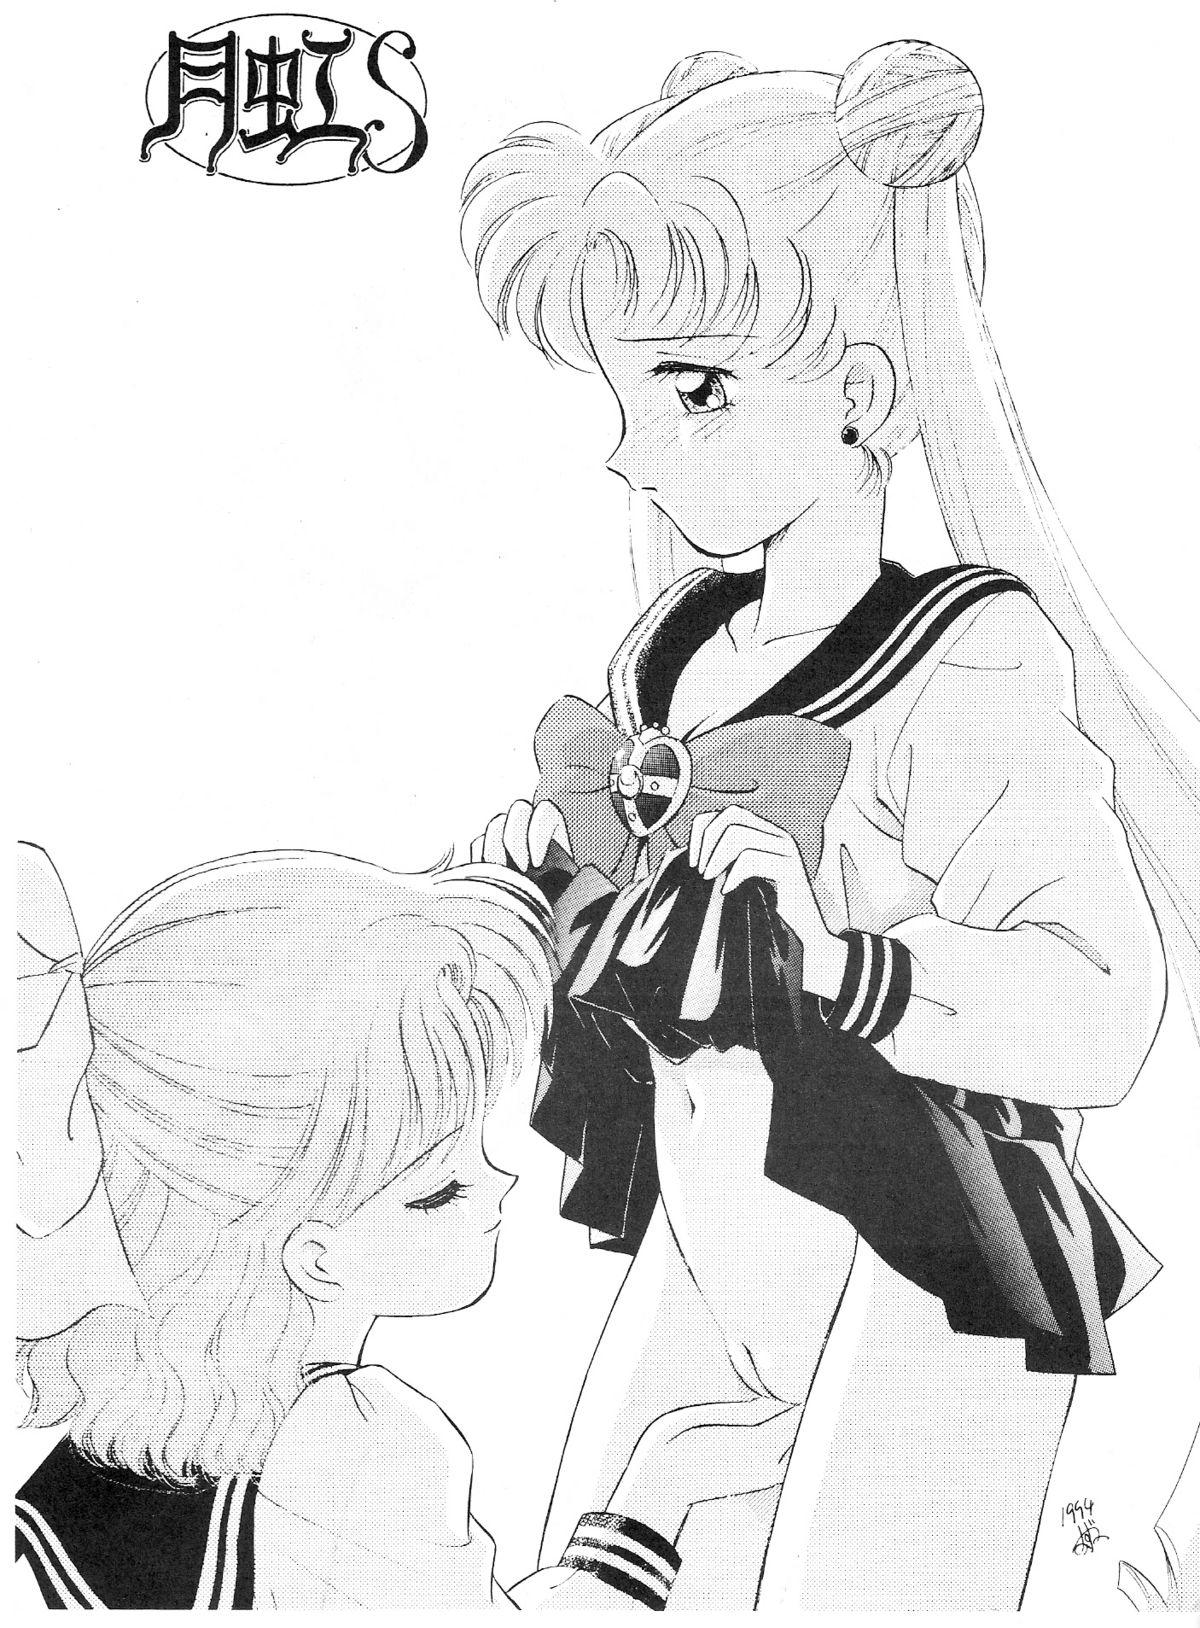 Italiano Gekkou SII - Sailor moon Uncensored - Page 2